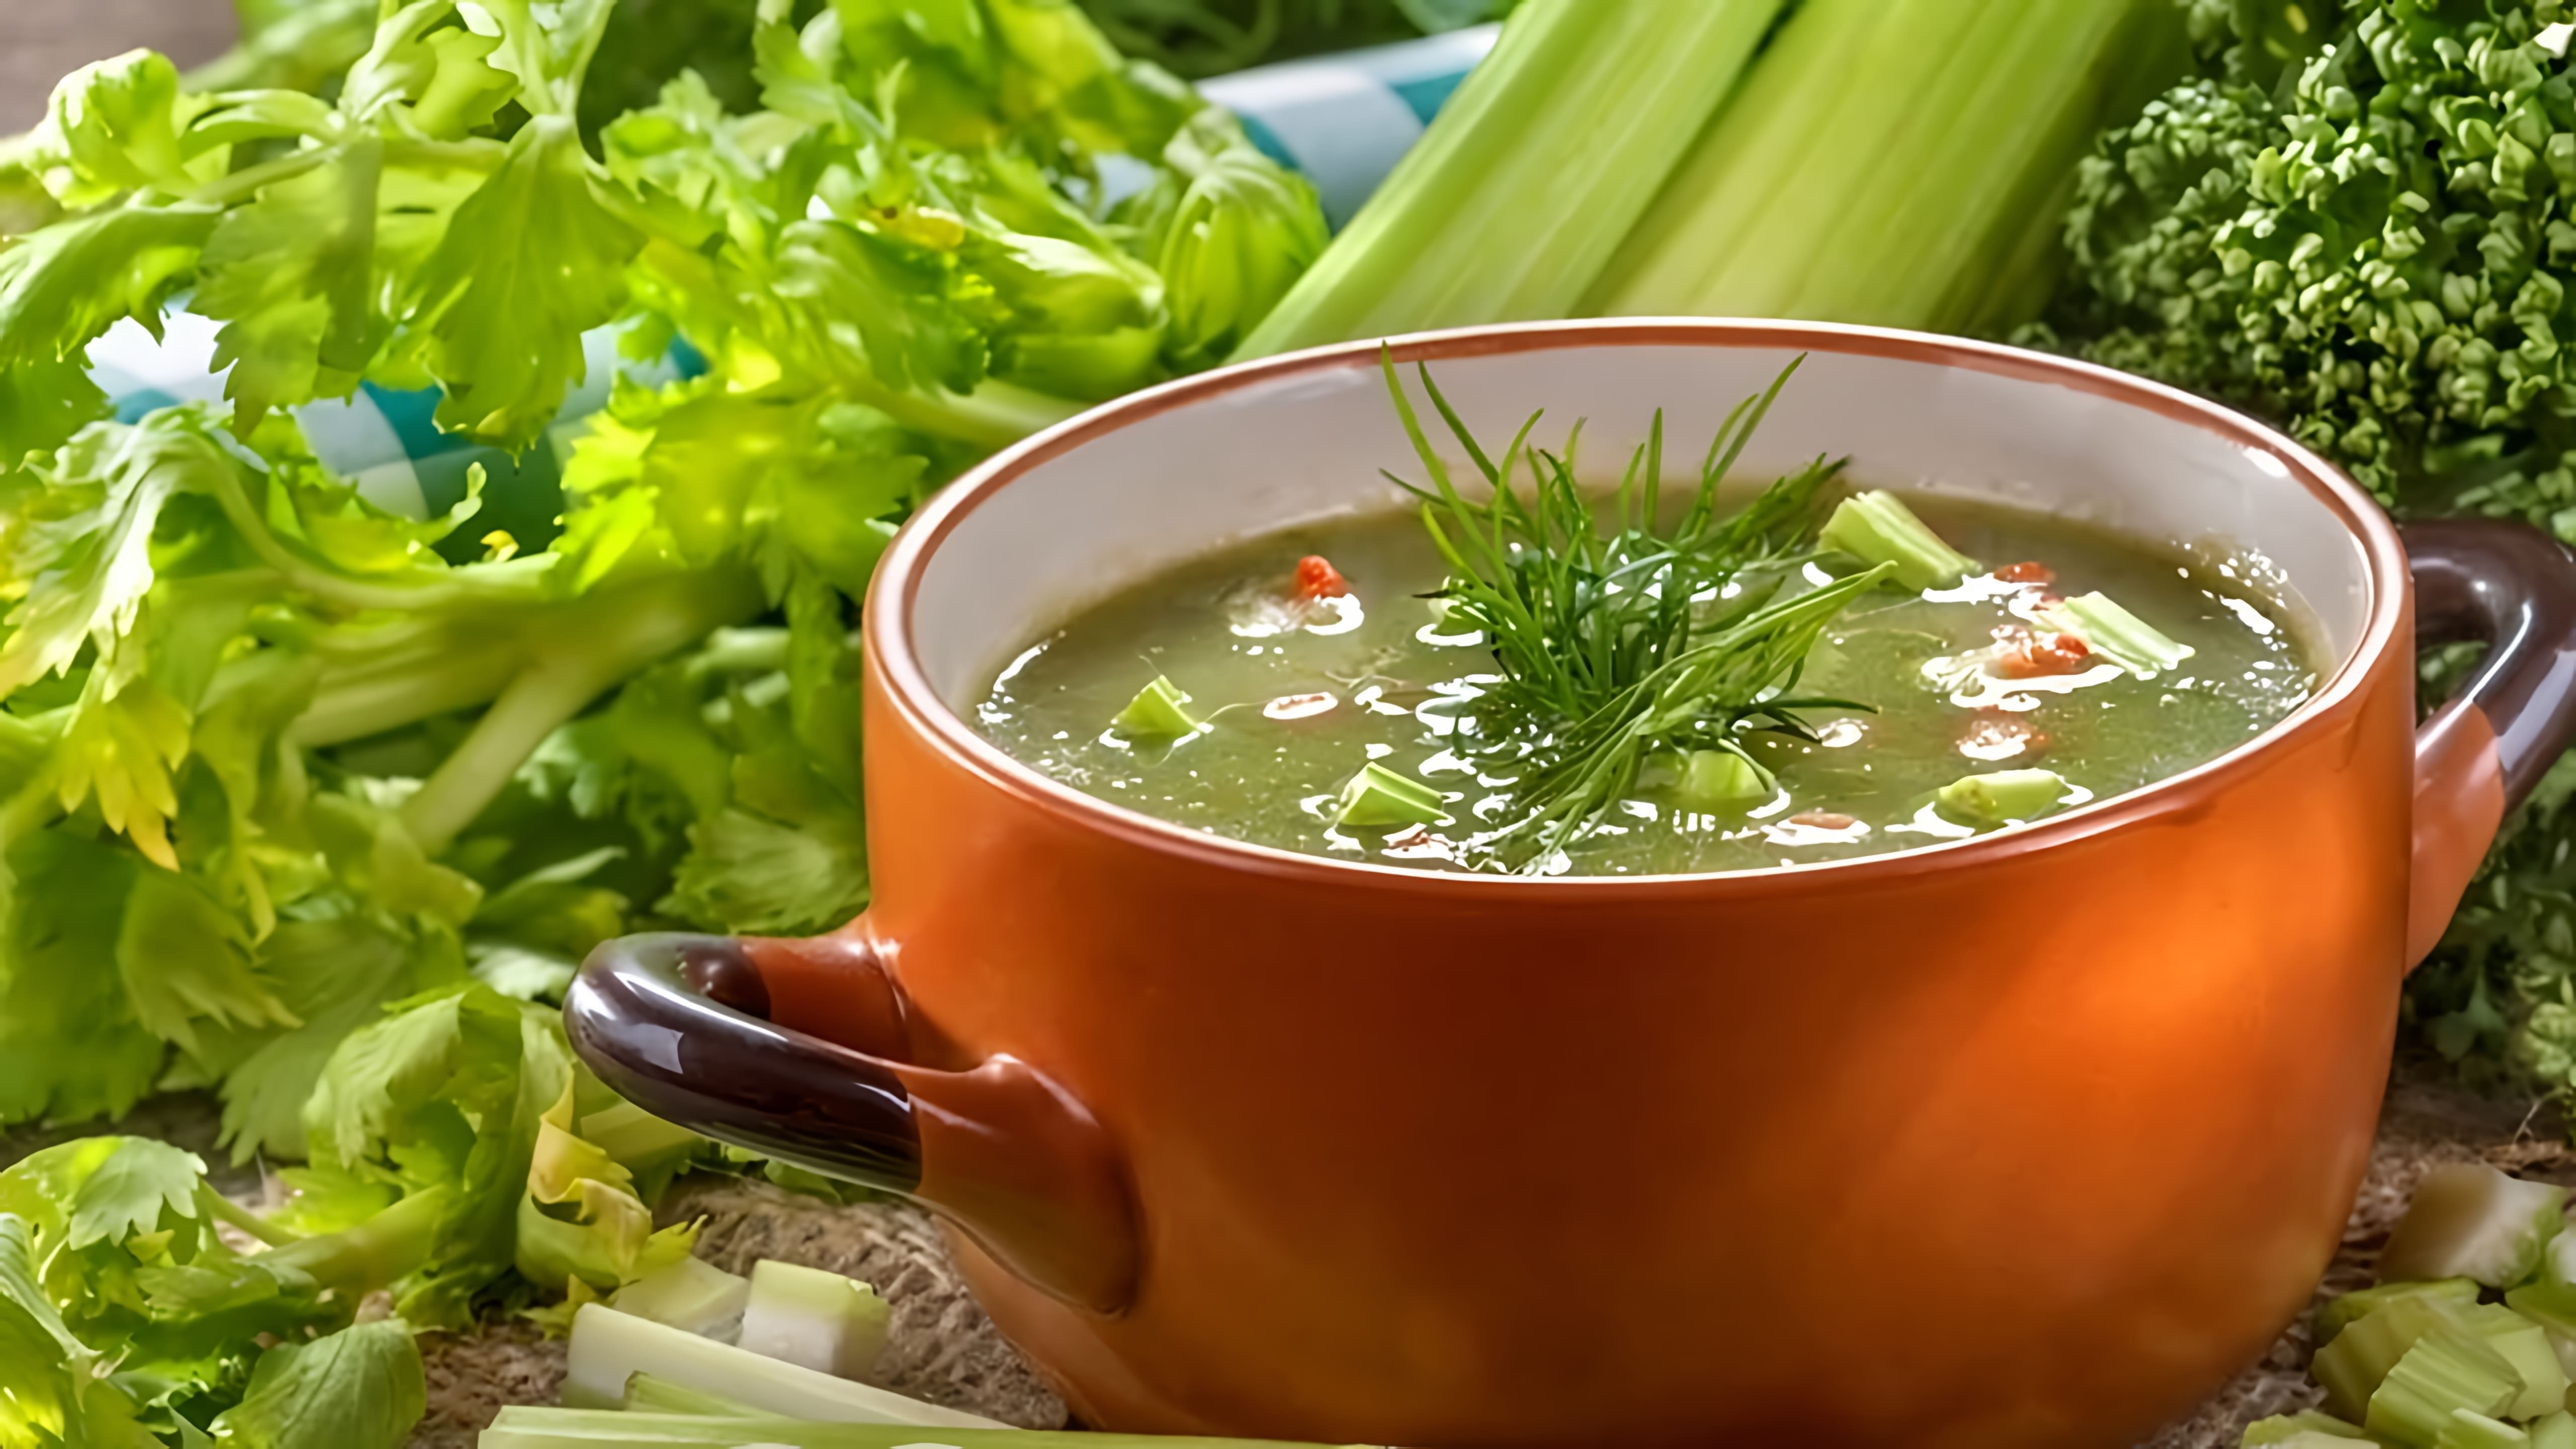 В этом видео рассказывается о рецепте супа из сельдерея, который был разработан американскими хирургами для похудения